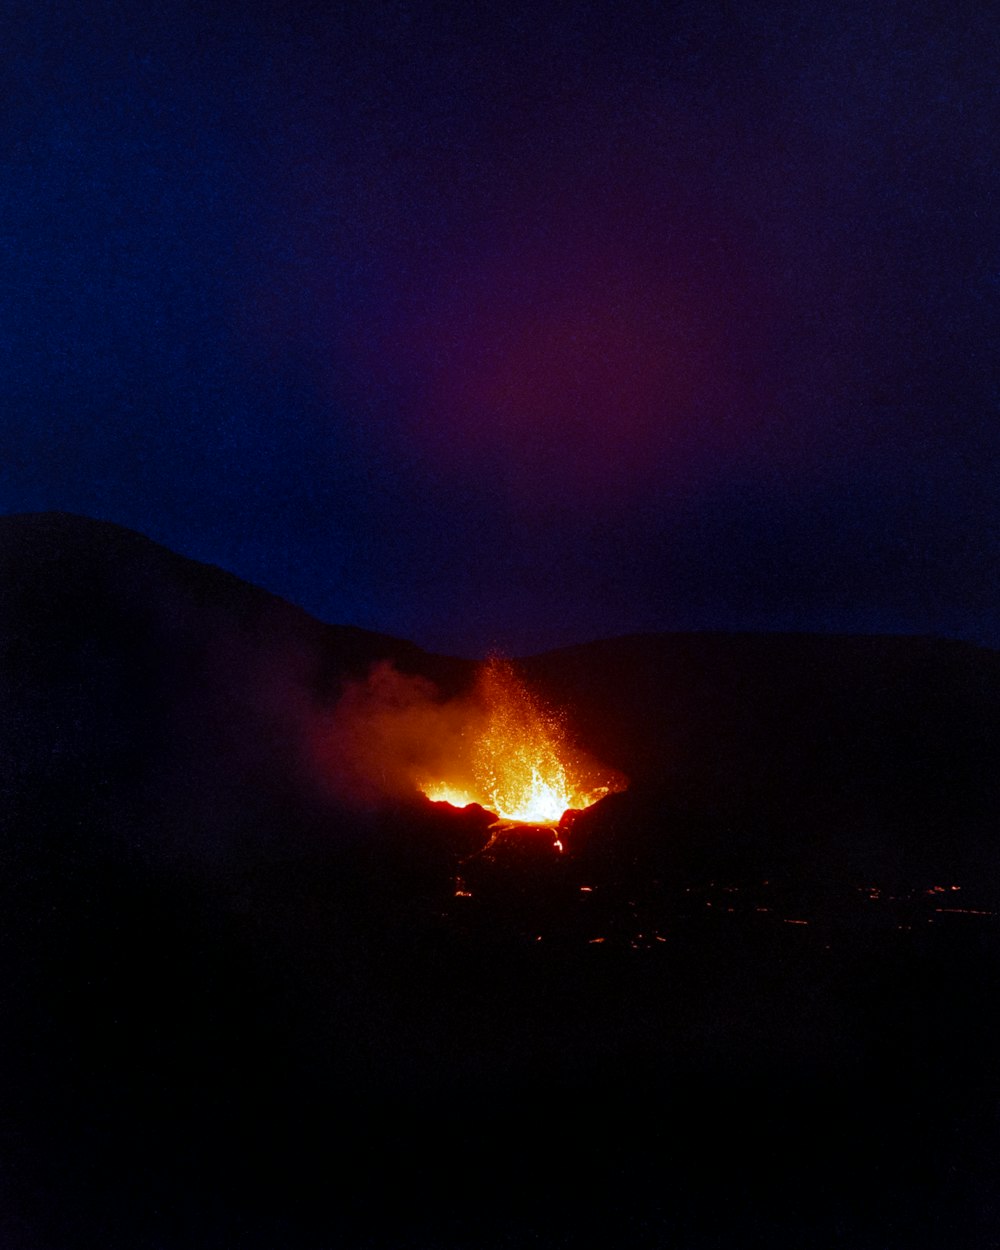 a large bonfire at night